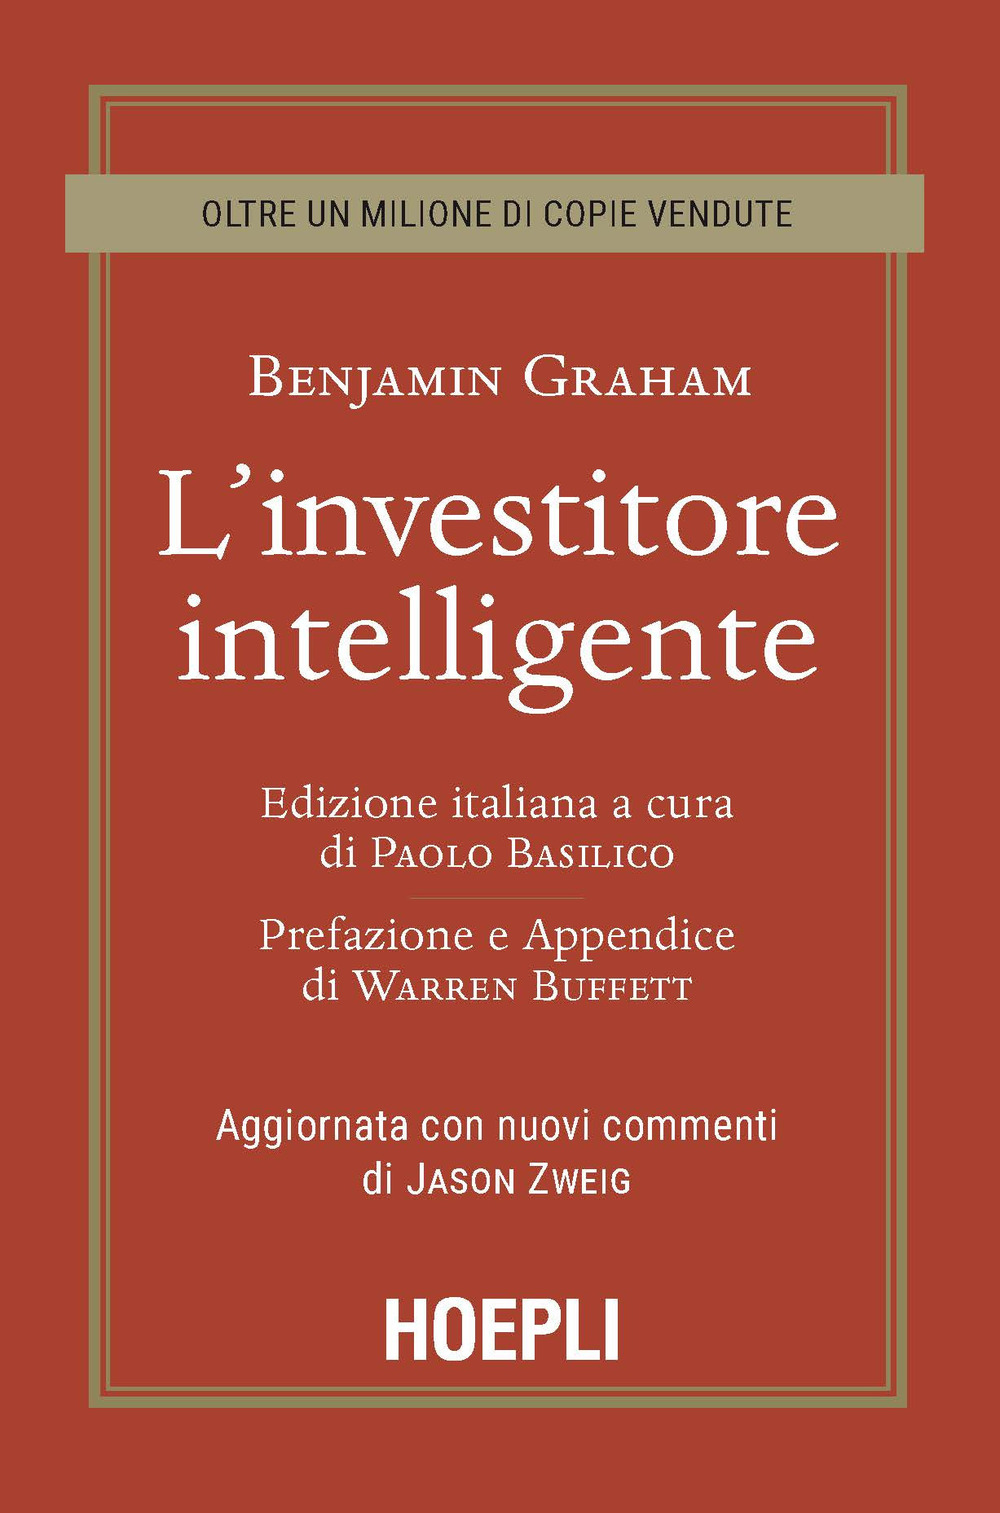 Libri Graham Benjamin - L' Investitore Intelligente. Aggiornata Con I Nuovi Commenti Di Jason Zweig NUOVO SIGILLATO, EDIZIONE DEL 11/09/2020 SUBITO DISPONIBILE